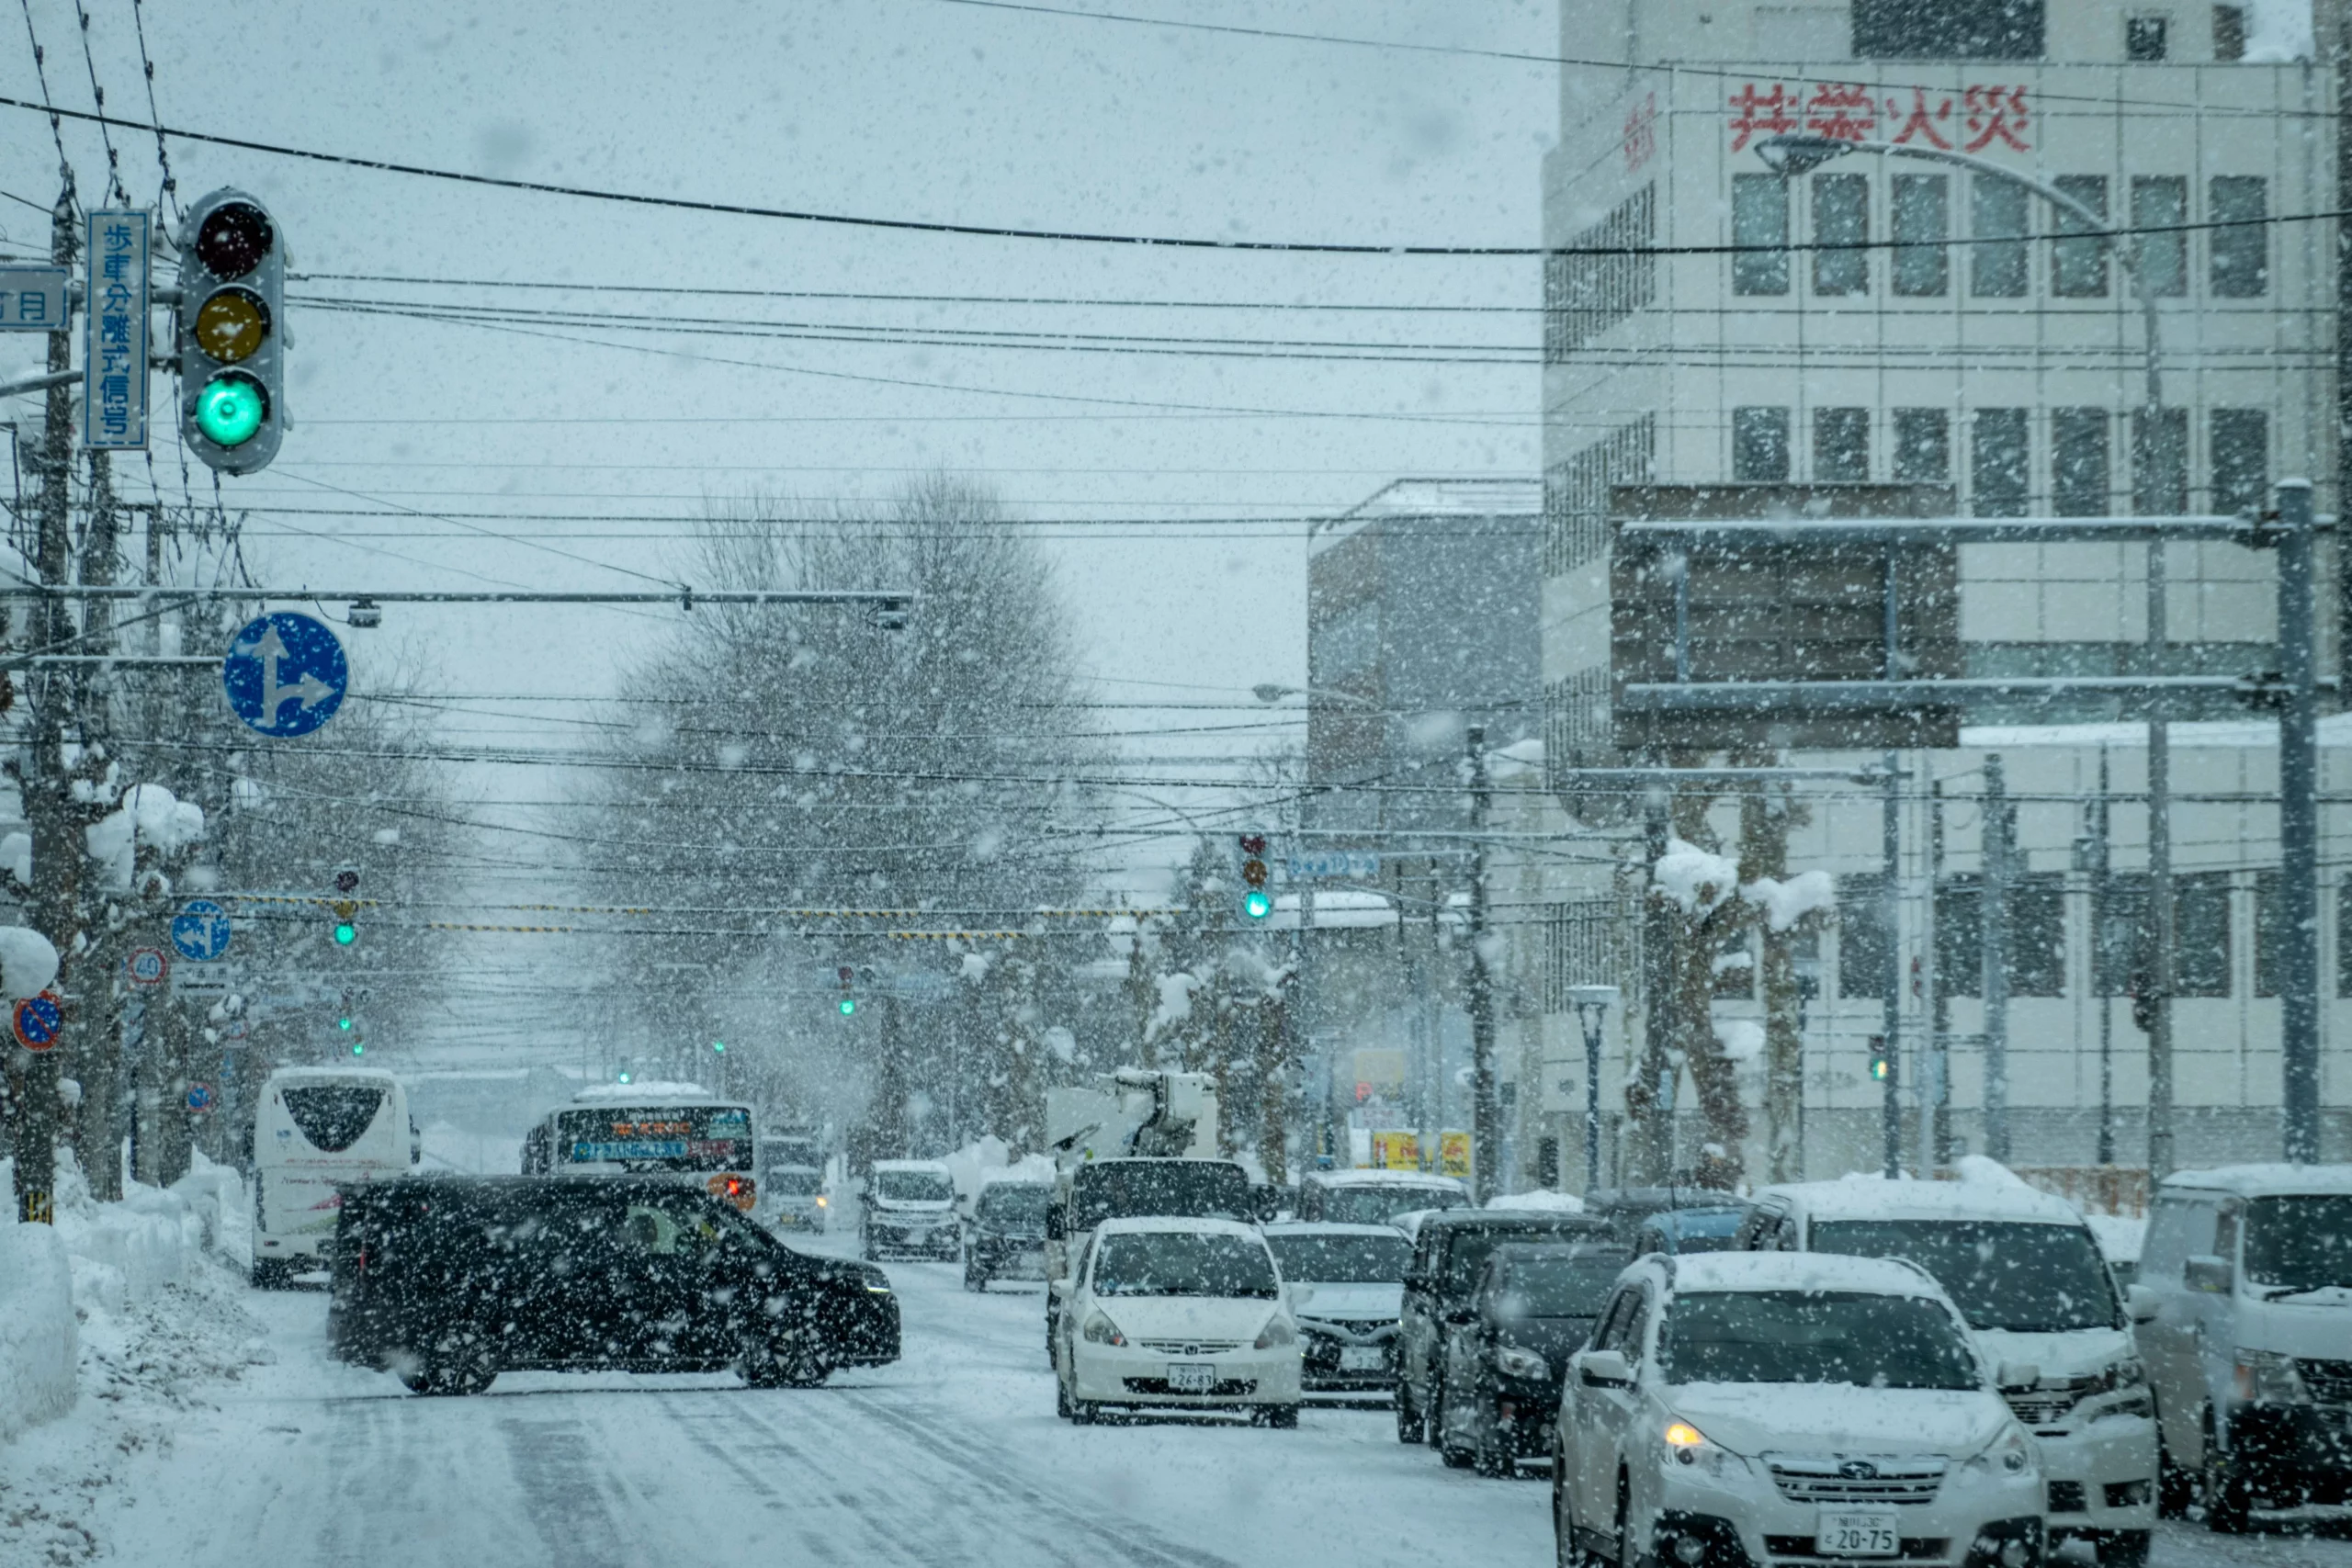 北海道街景圖,馬路上有許多車輛,正在下雪